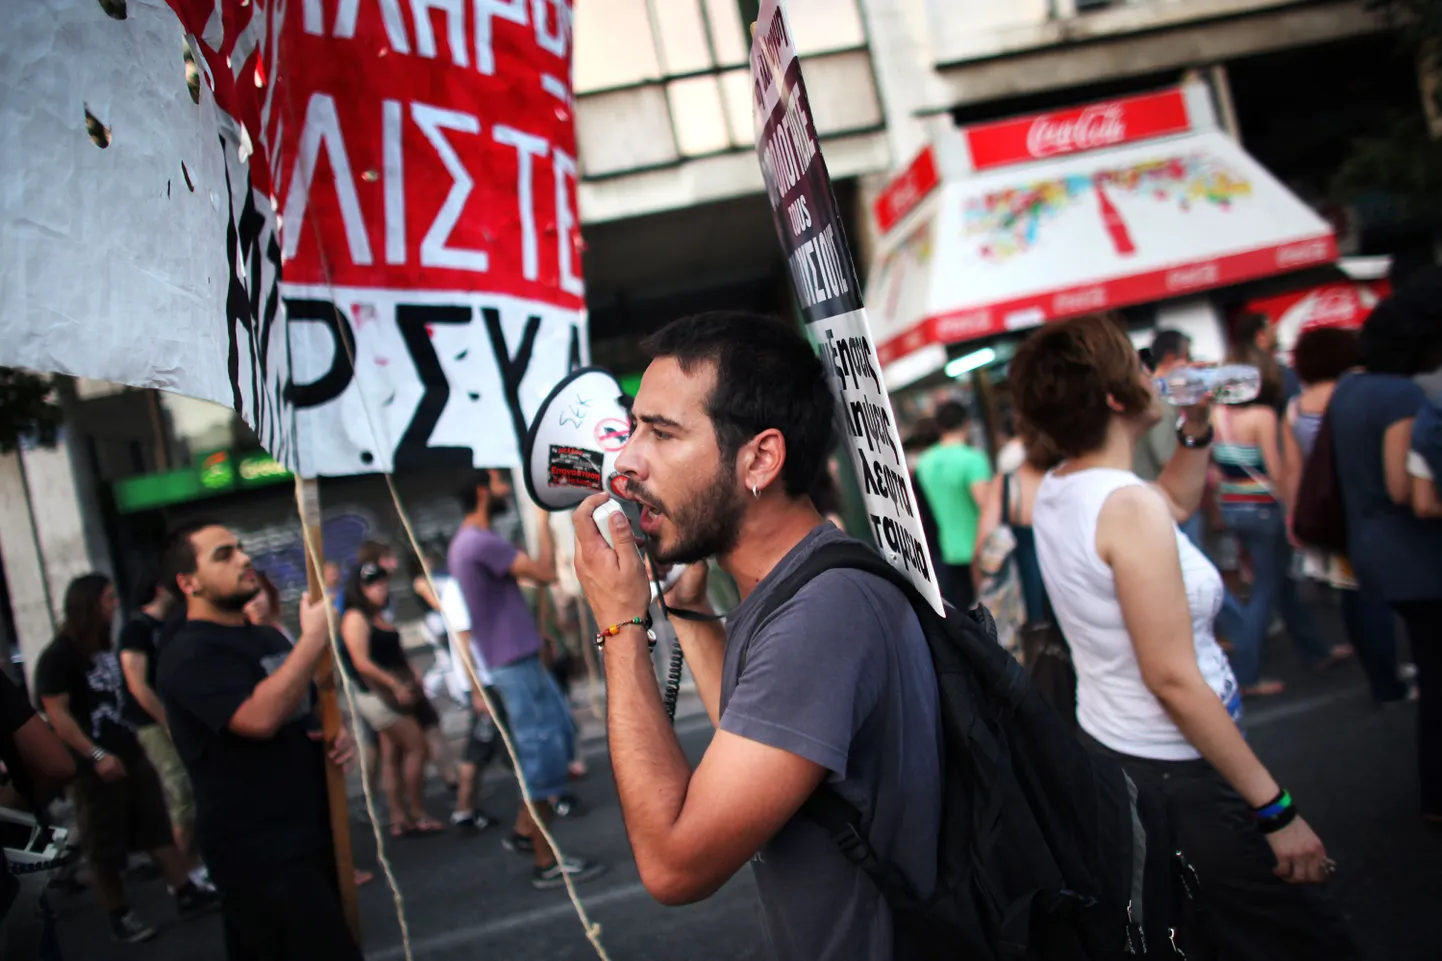 Kreeklased protestivad taas